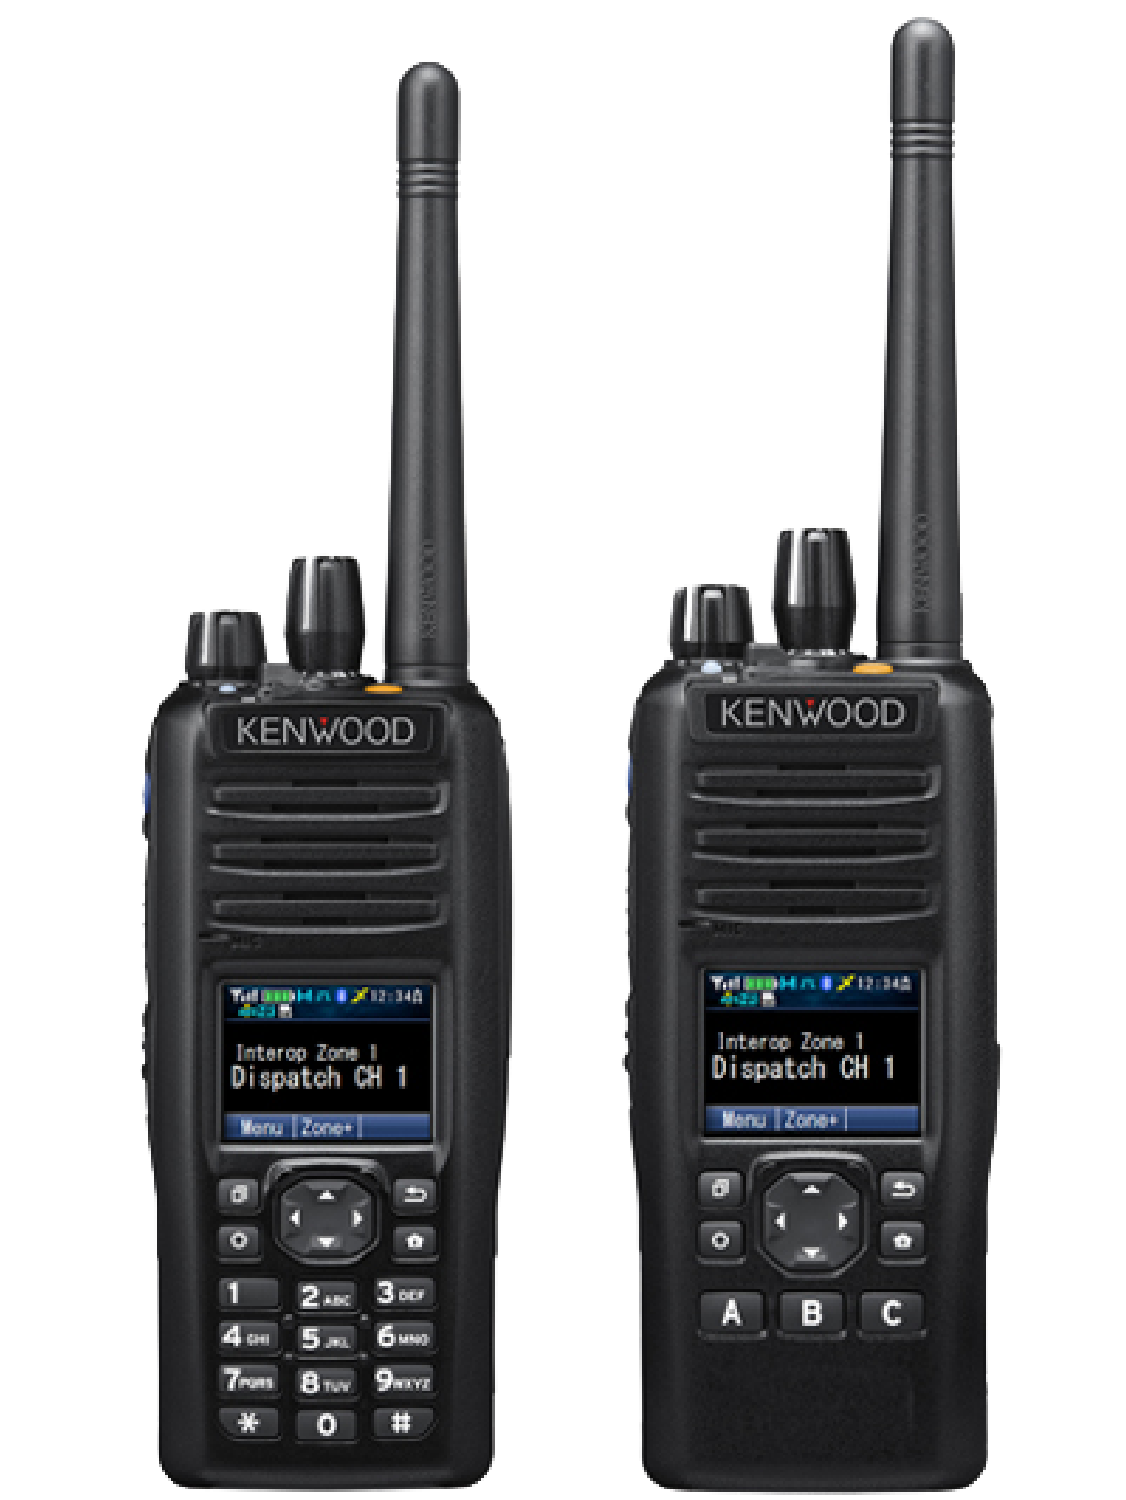 Kenwood NX-5400